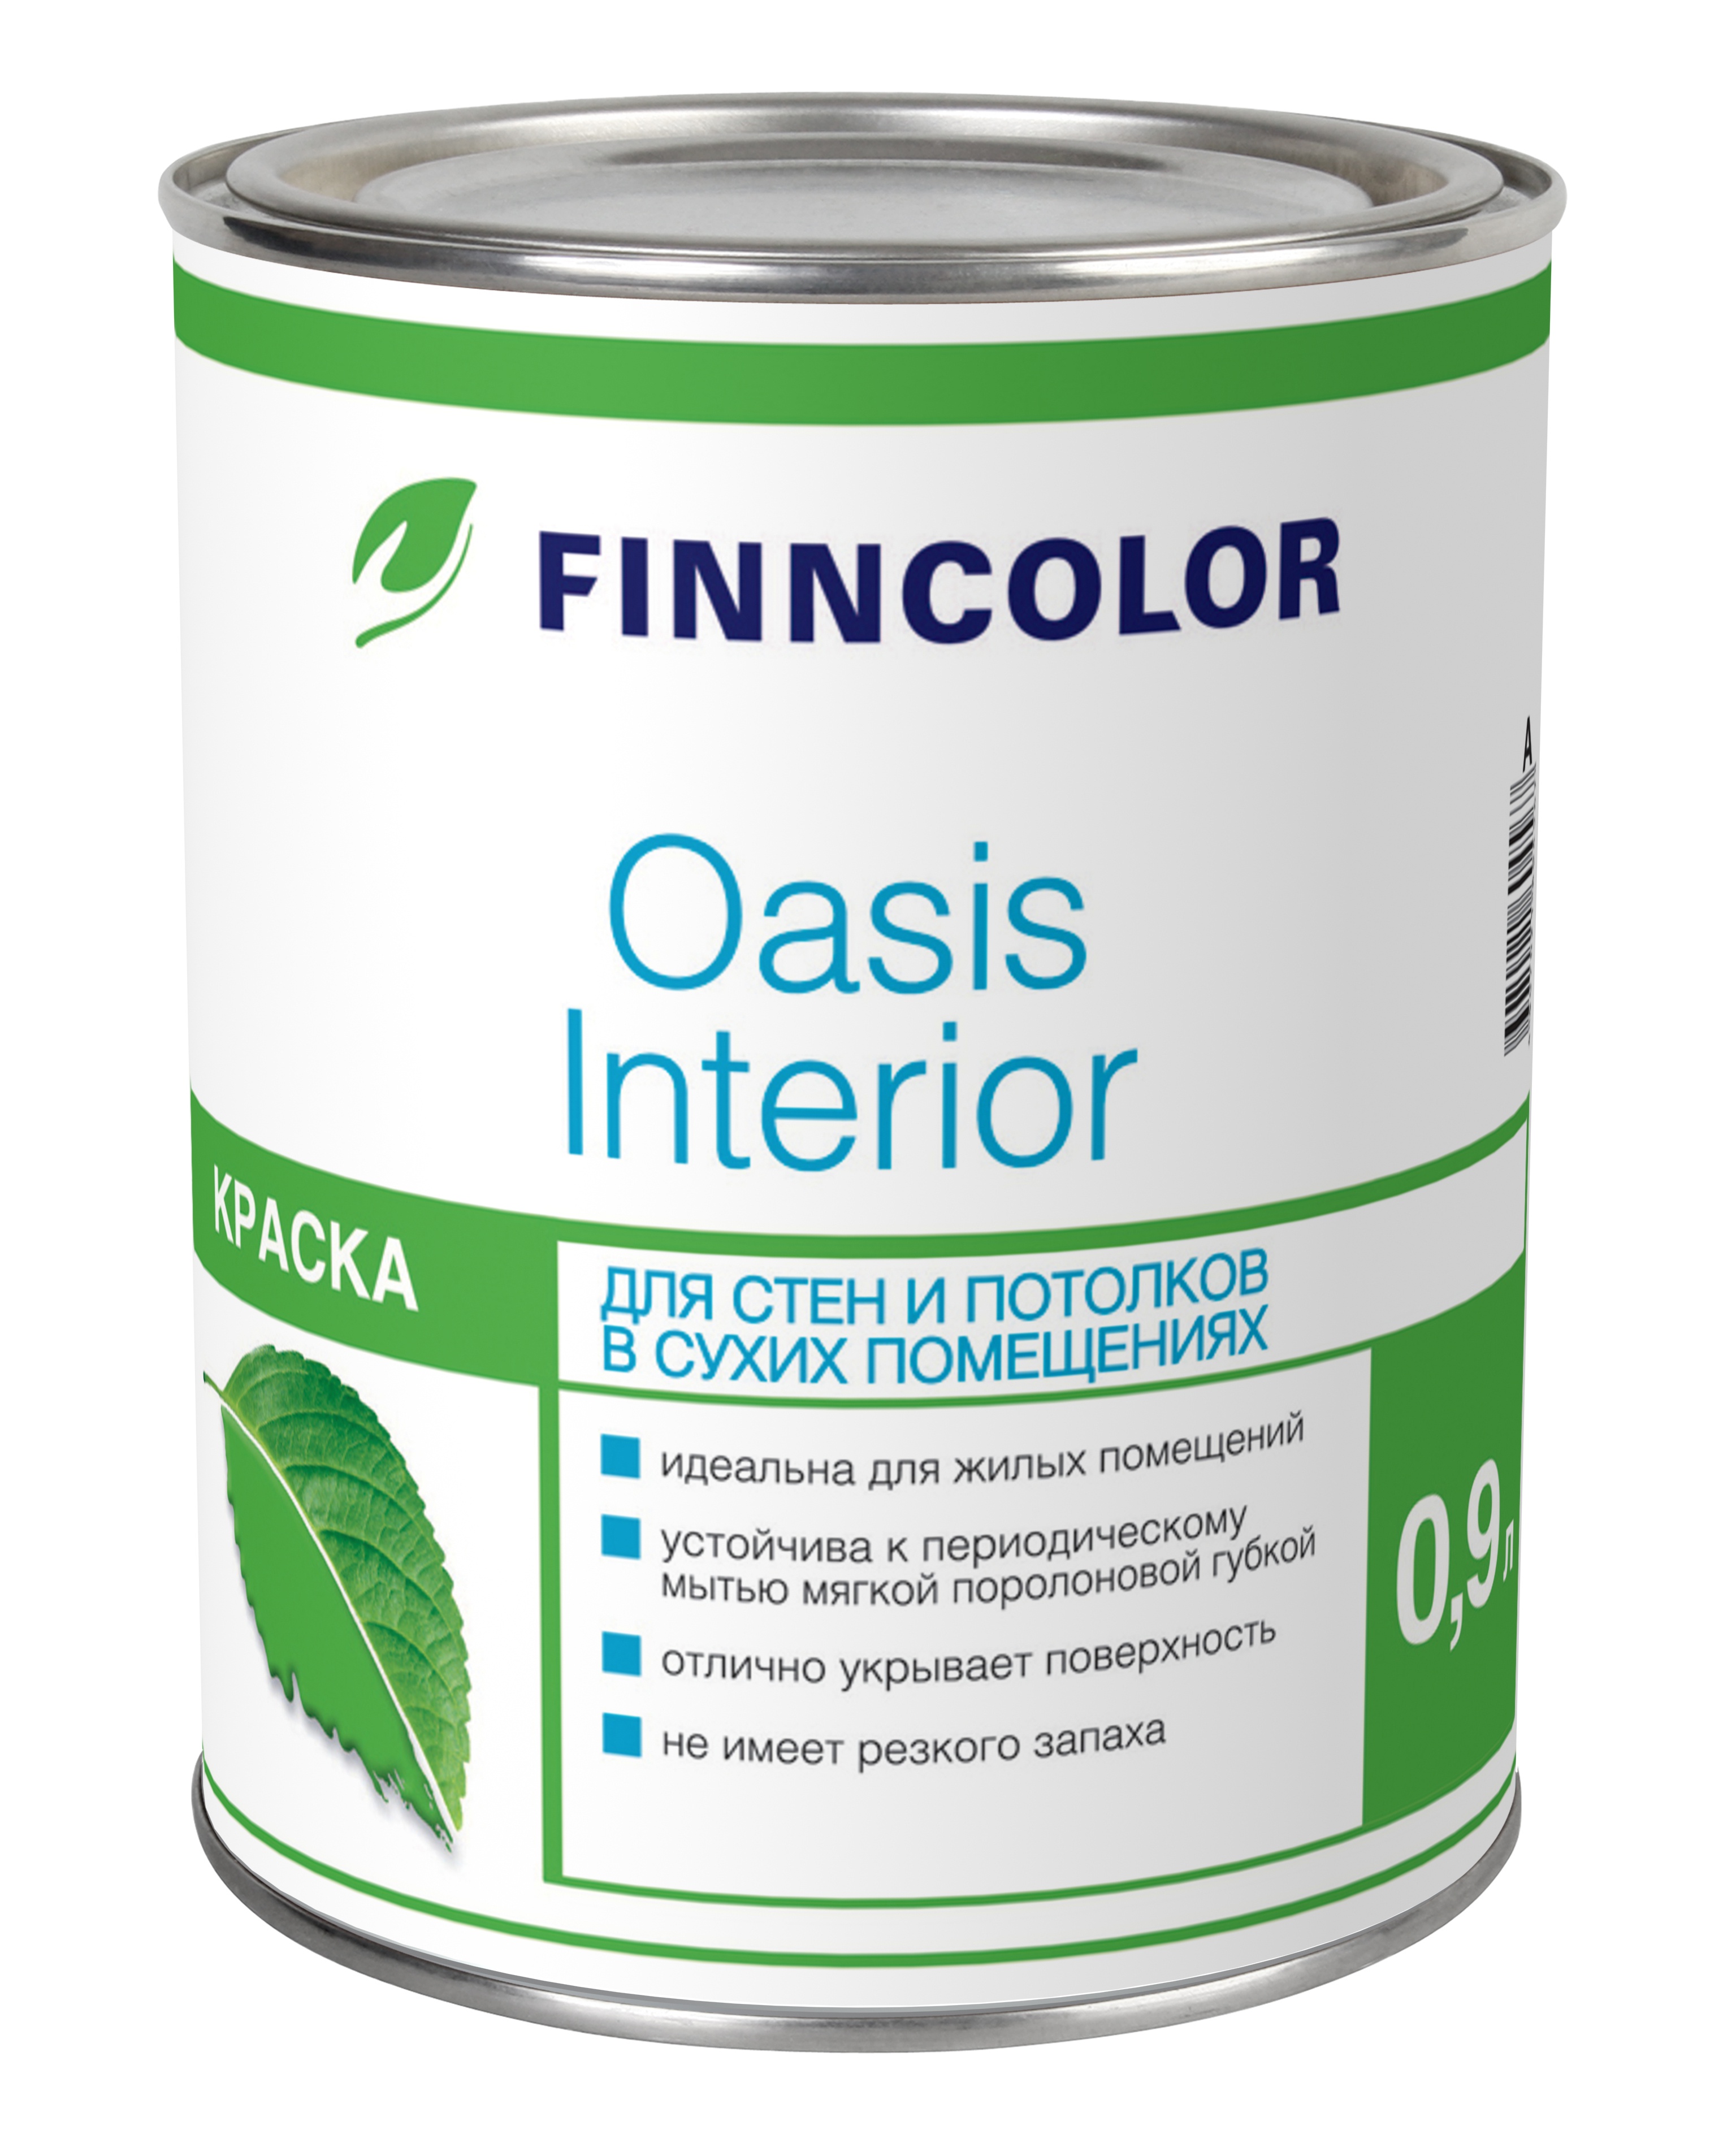 Finncolor Oasis Interior 0,9 л, Краска интерьерная водно-дисперсионная (белая)